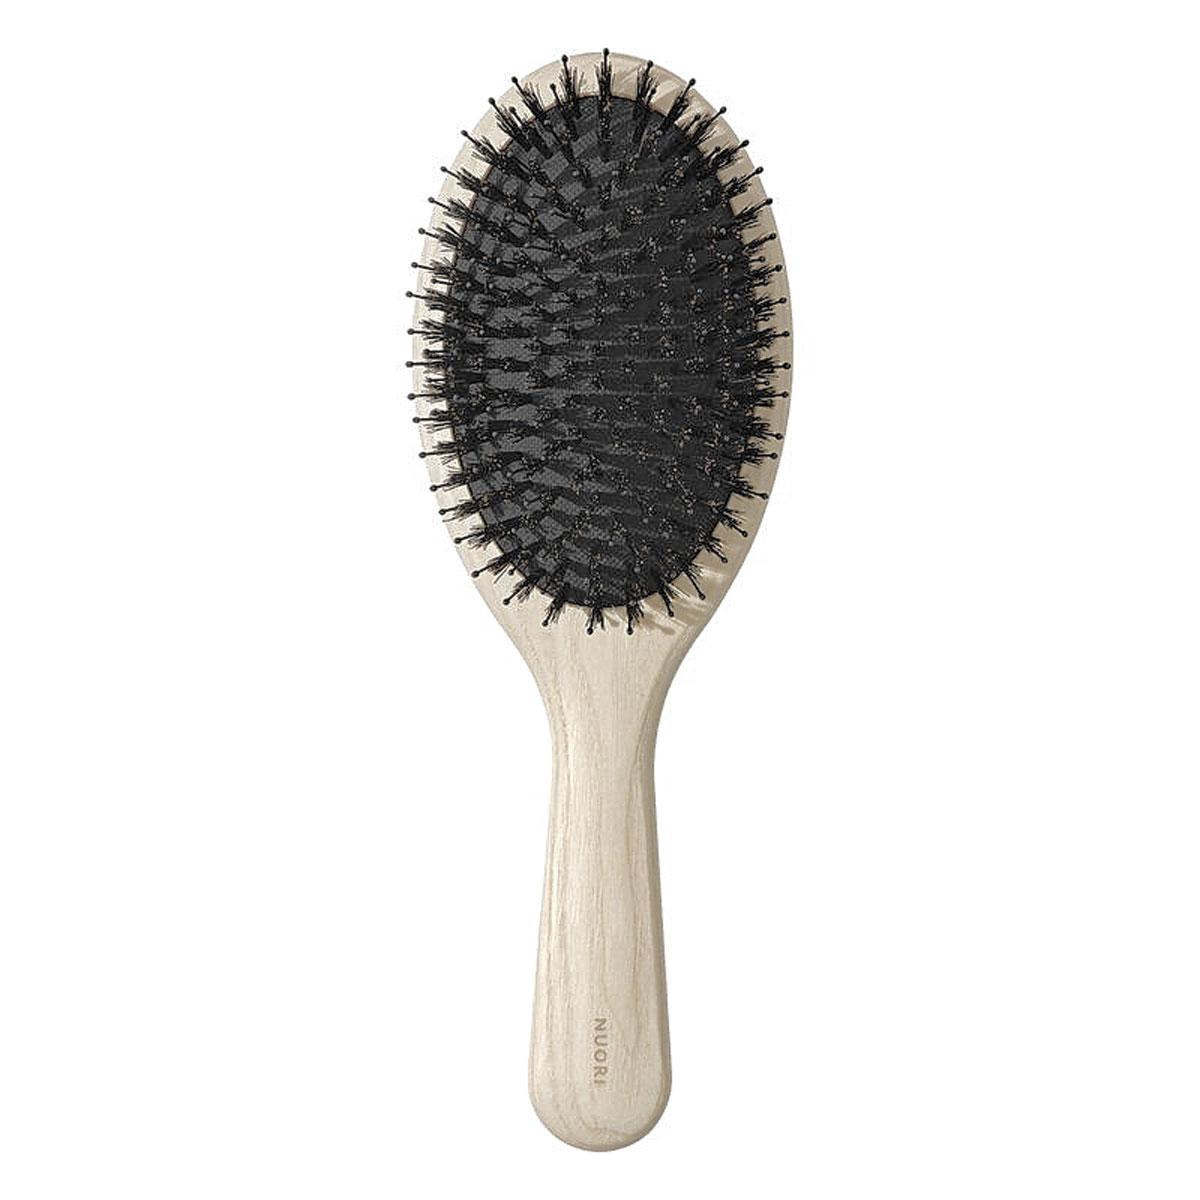 Obsessions beauté: Brosse à cheveux revitalisante dans son étui en cuir végan (79 euros), Nuori chez Beauty by Kroonen., SDP